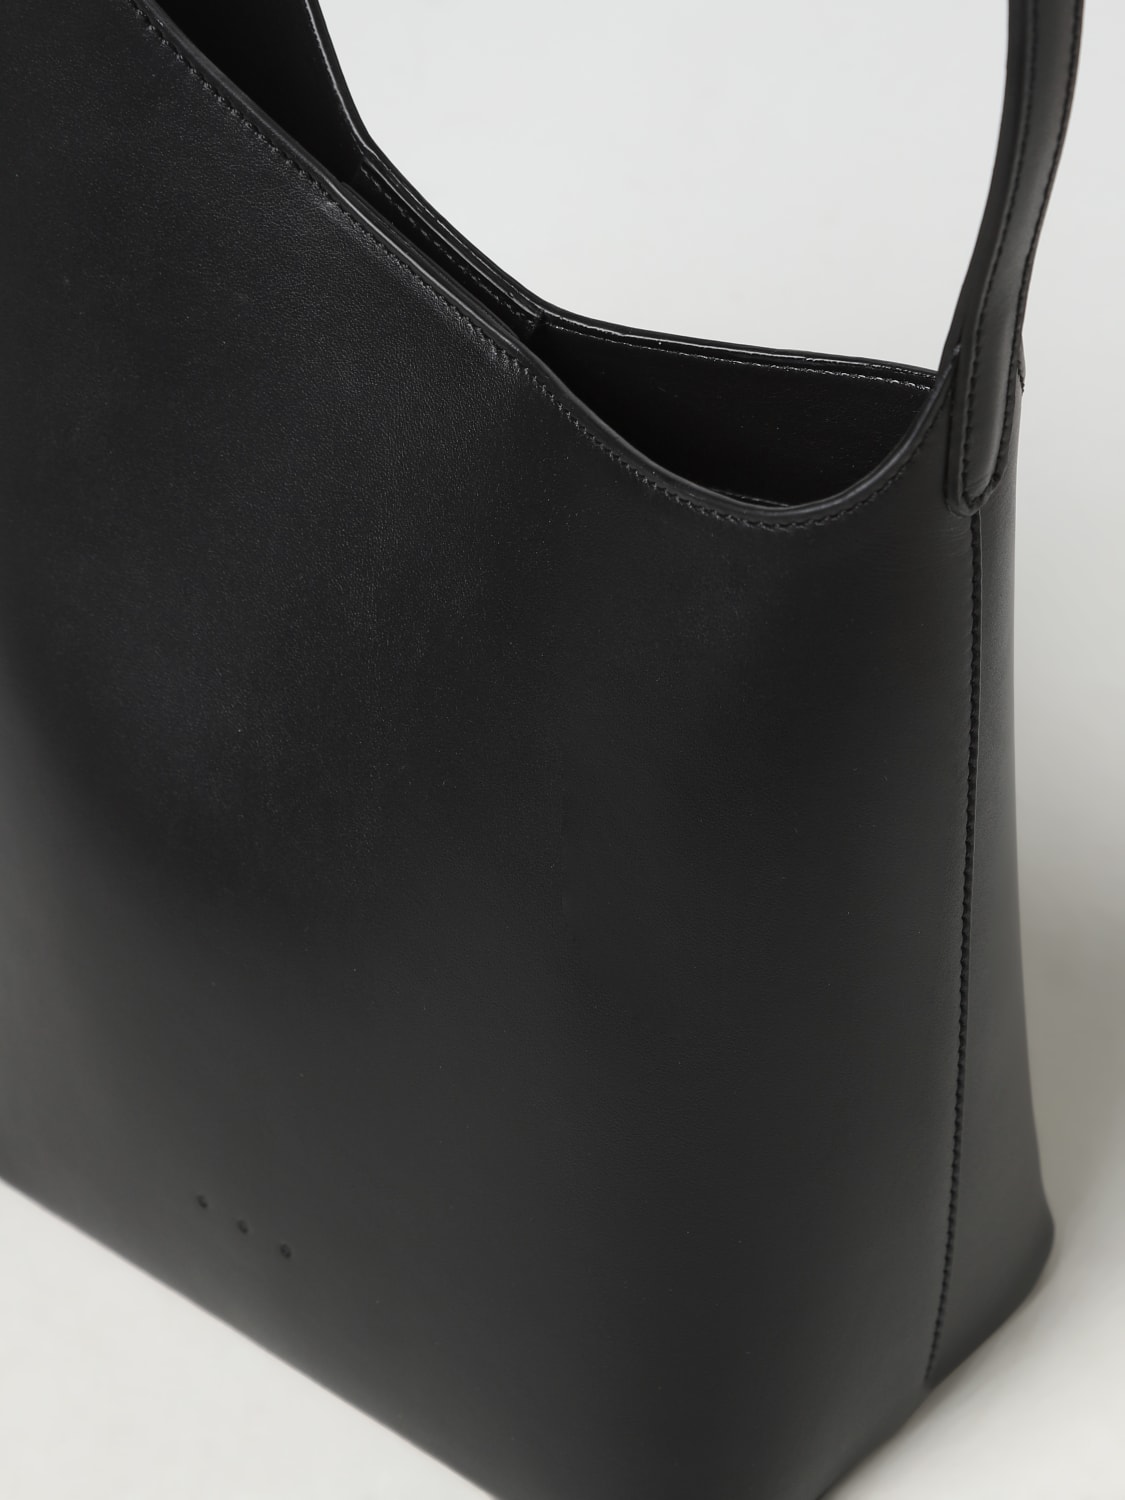 Aesther Ekme Outlet: shoulder bag for woman - Dark